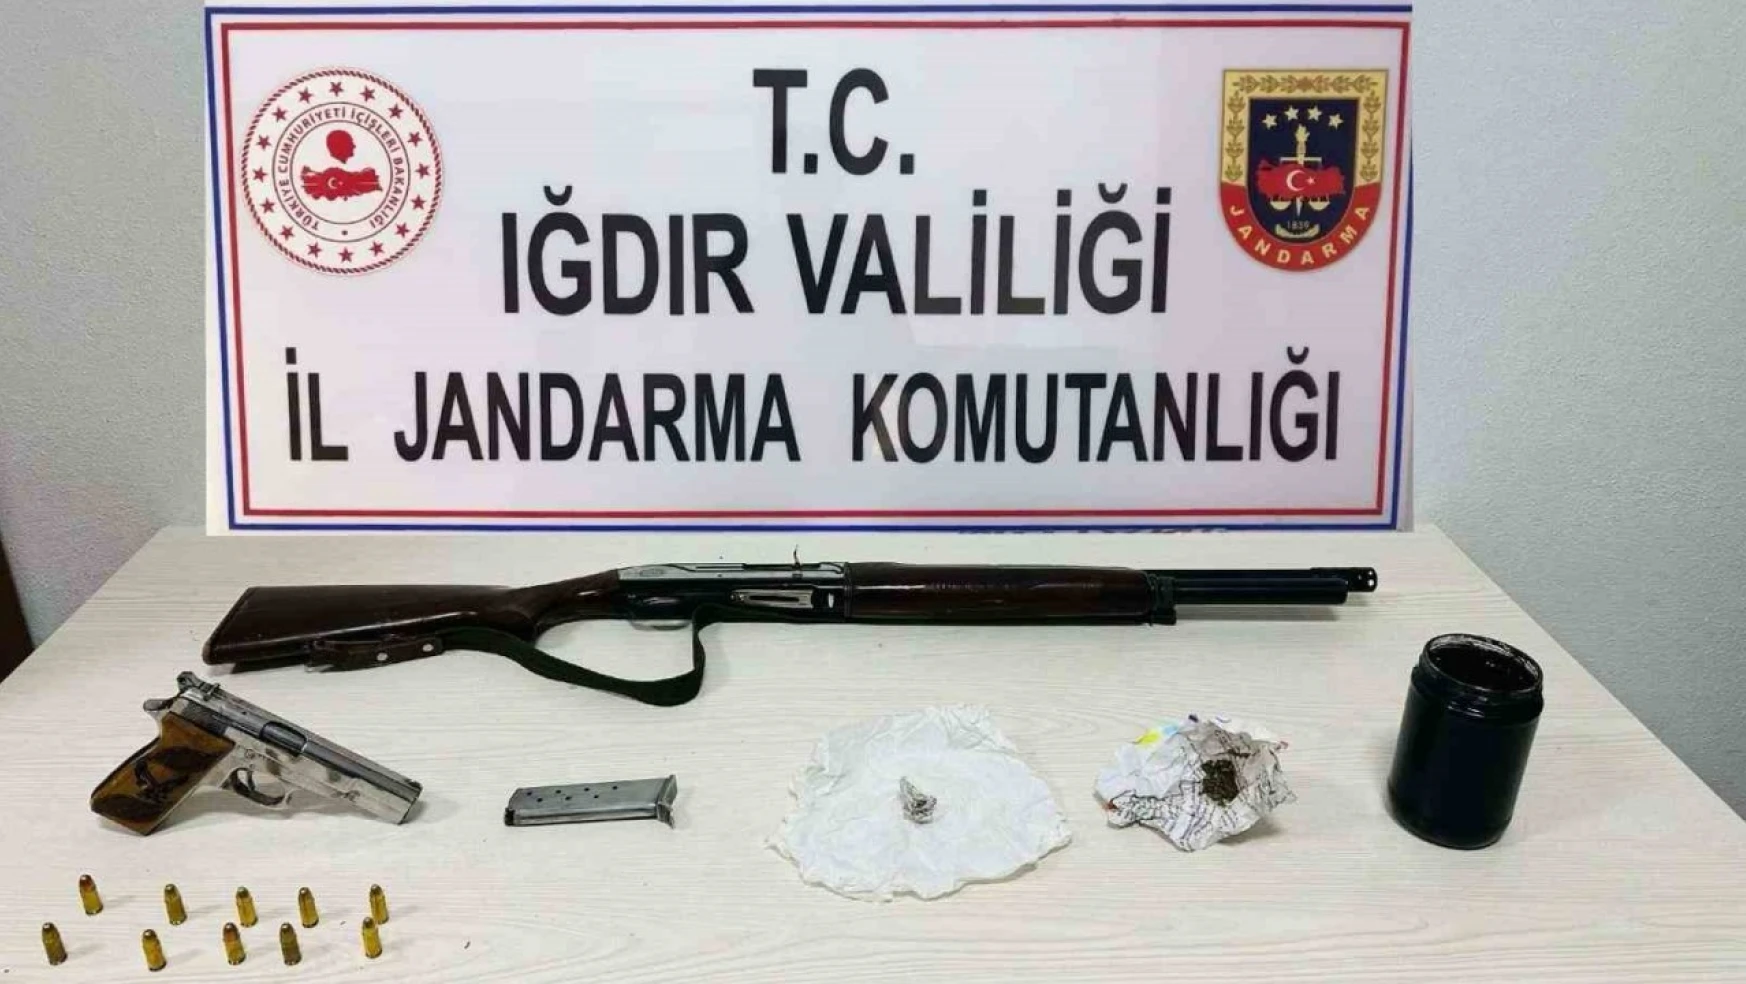 Iğdır'da Uyuşturucu Operasyonu:  5 gözaltı